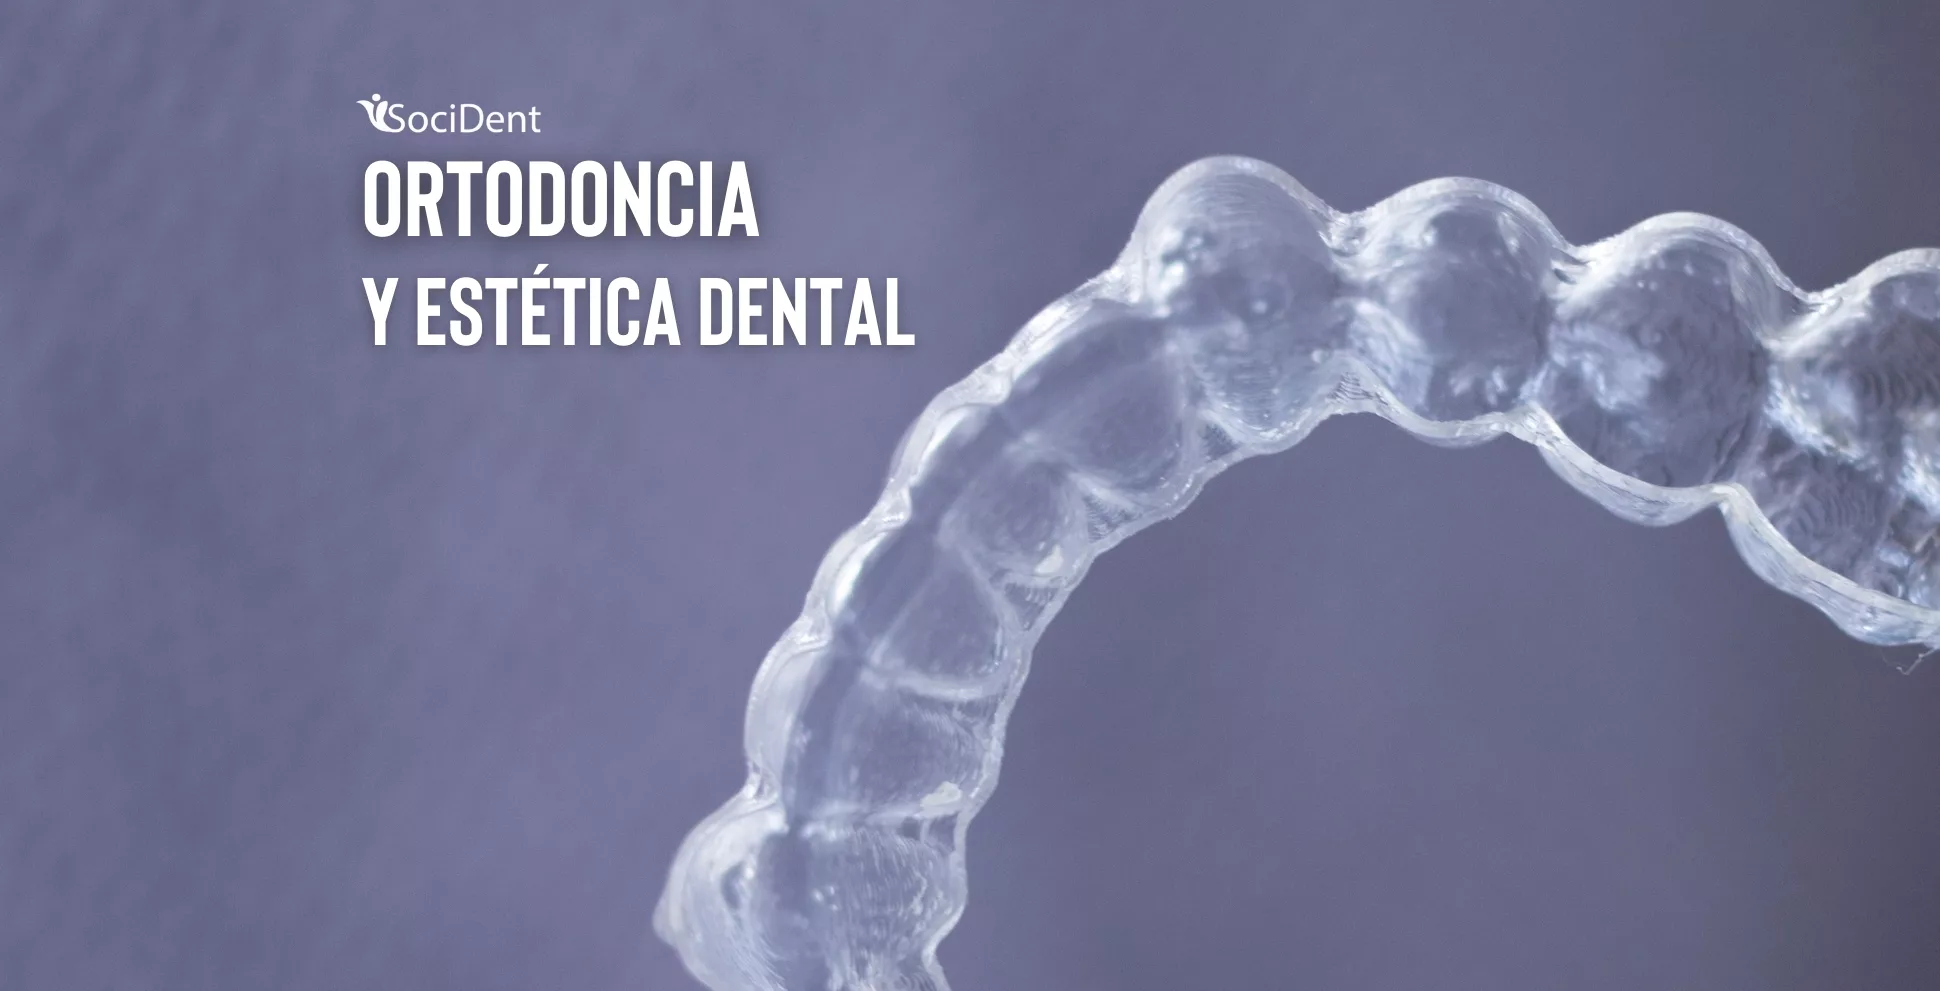 Socident madrid mostoles navalcarnero ortodoncia invisible, tradicional y estetica dental